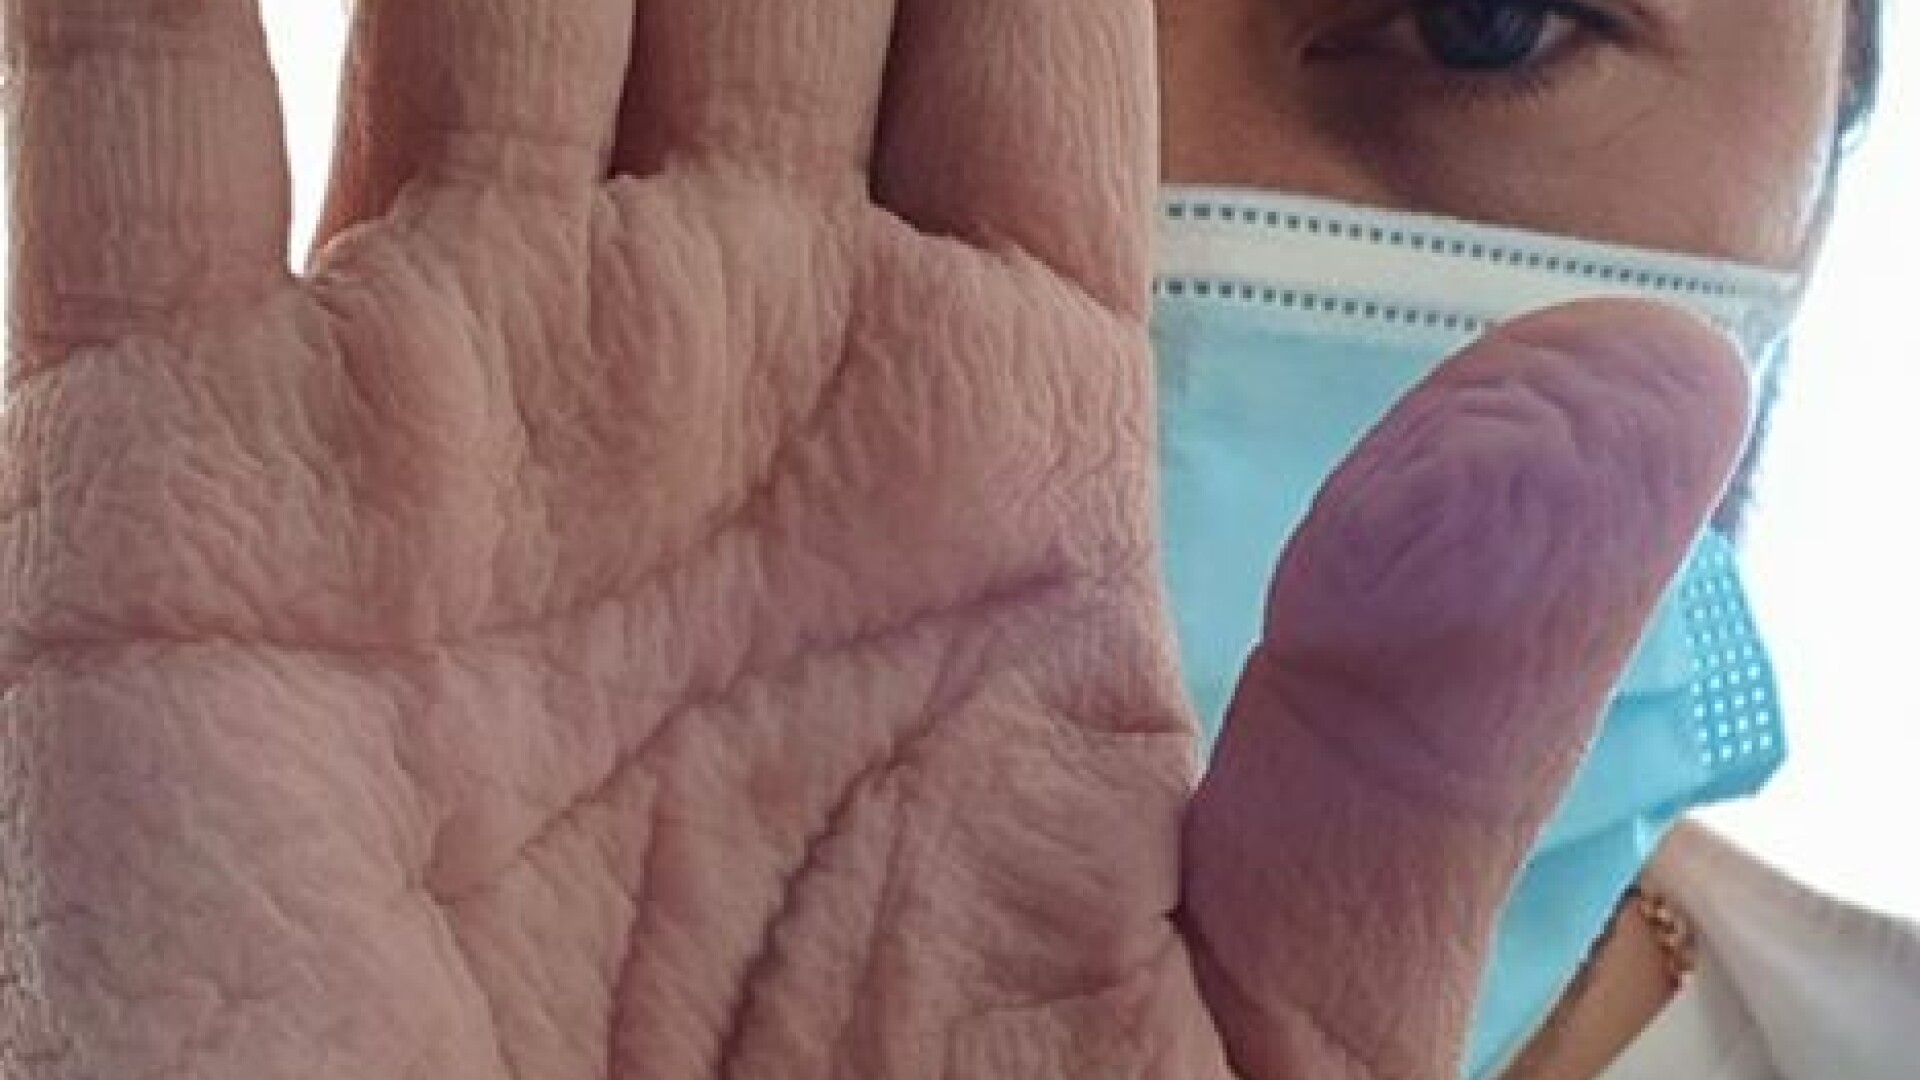 Așa arată mâna unui chirurg după o operație de 4 ore, la aproape 30 de grade. Cum a salvat în ultima clipă viața unui om